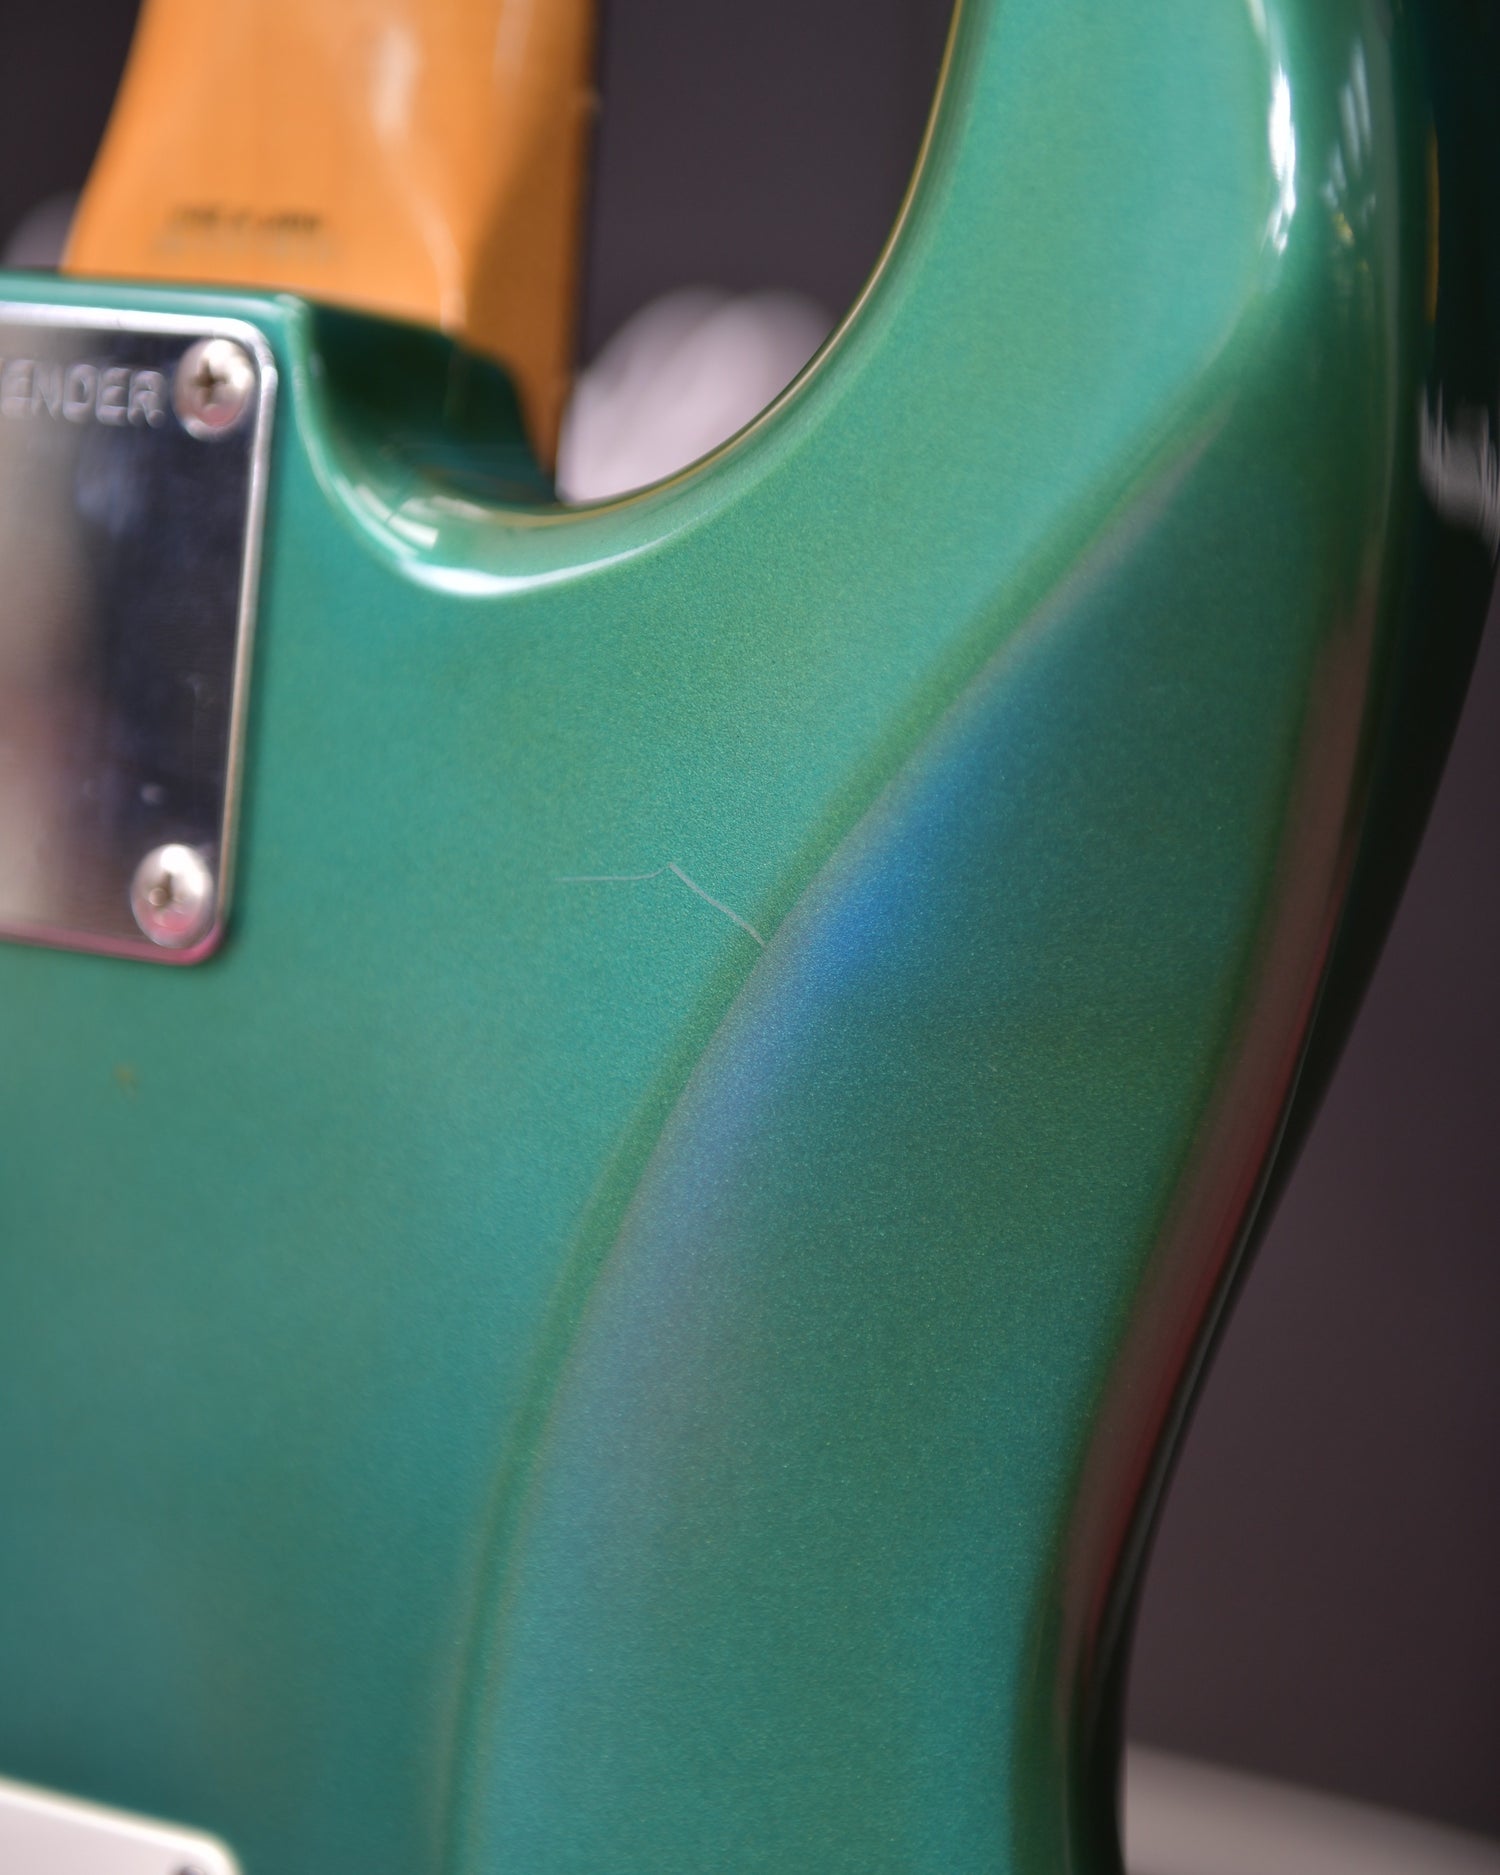 Fender Made in Japan 1988 Custom Colour Sherwood Green 62 Reissue Stratocaster